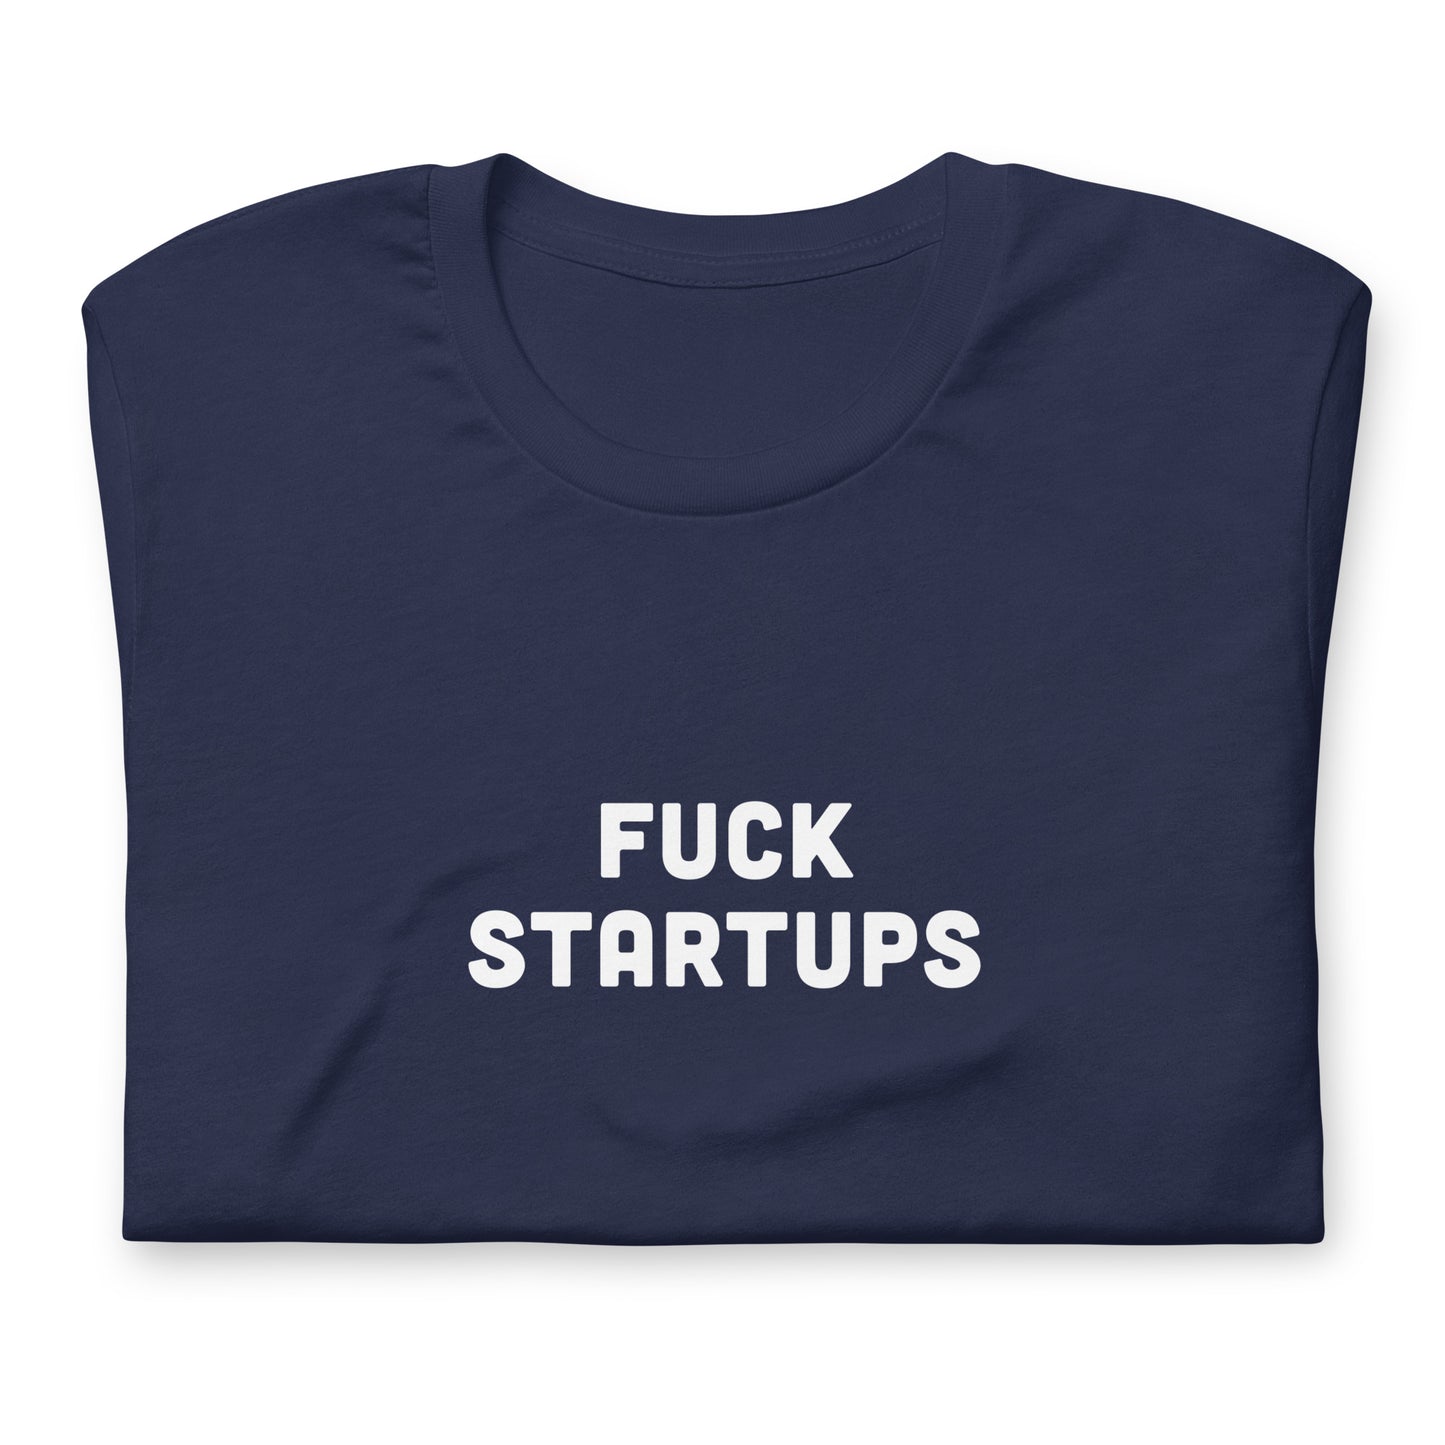 Fuck Startups T-Shirt Size XL Color Black